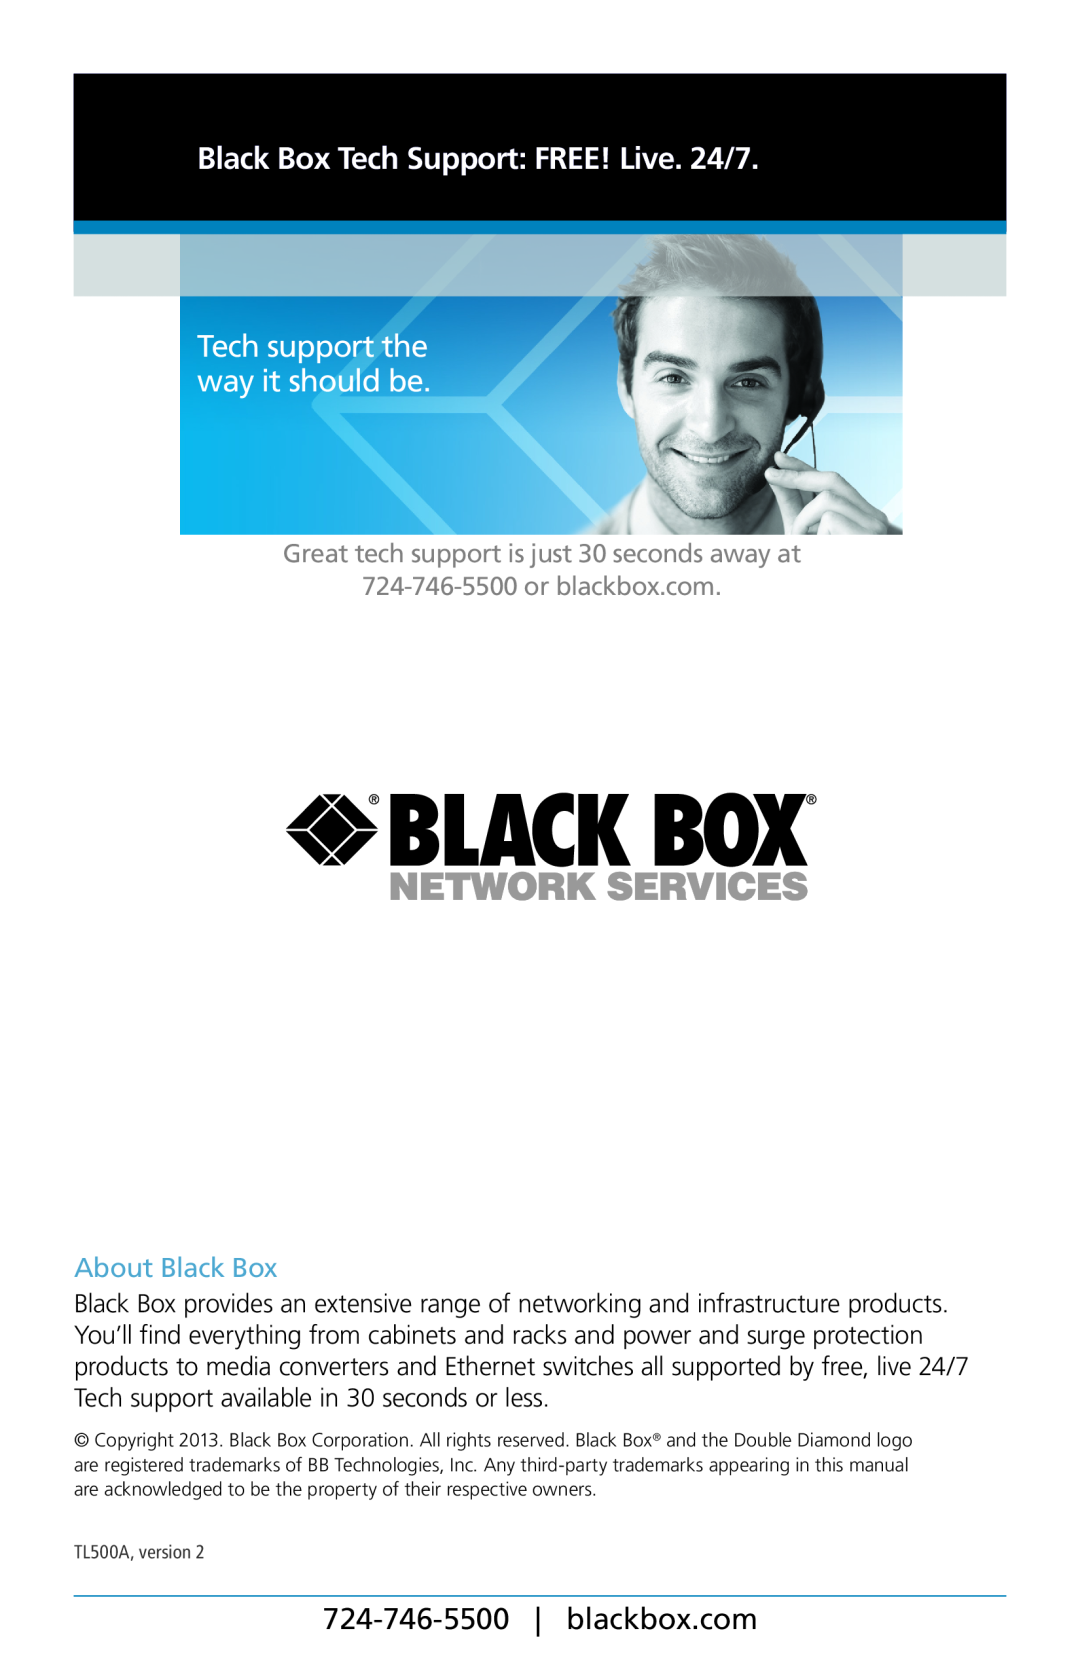 Black Box TL500A manual Tech support the way it should be, Black Box Tech Support: FREE! Live. 24/7, blackbox.com 